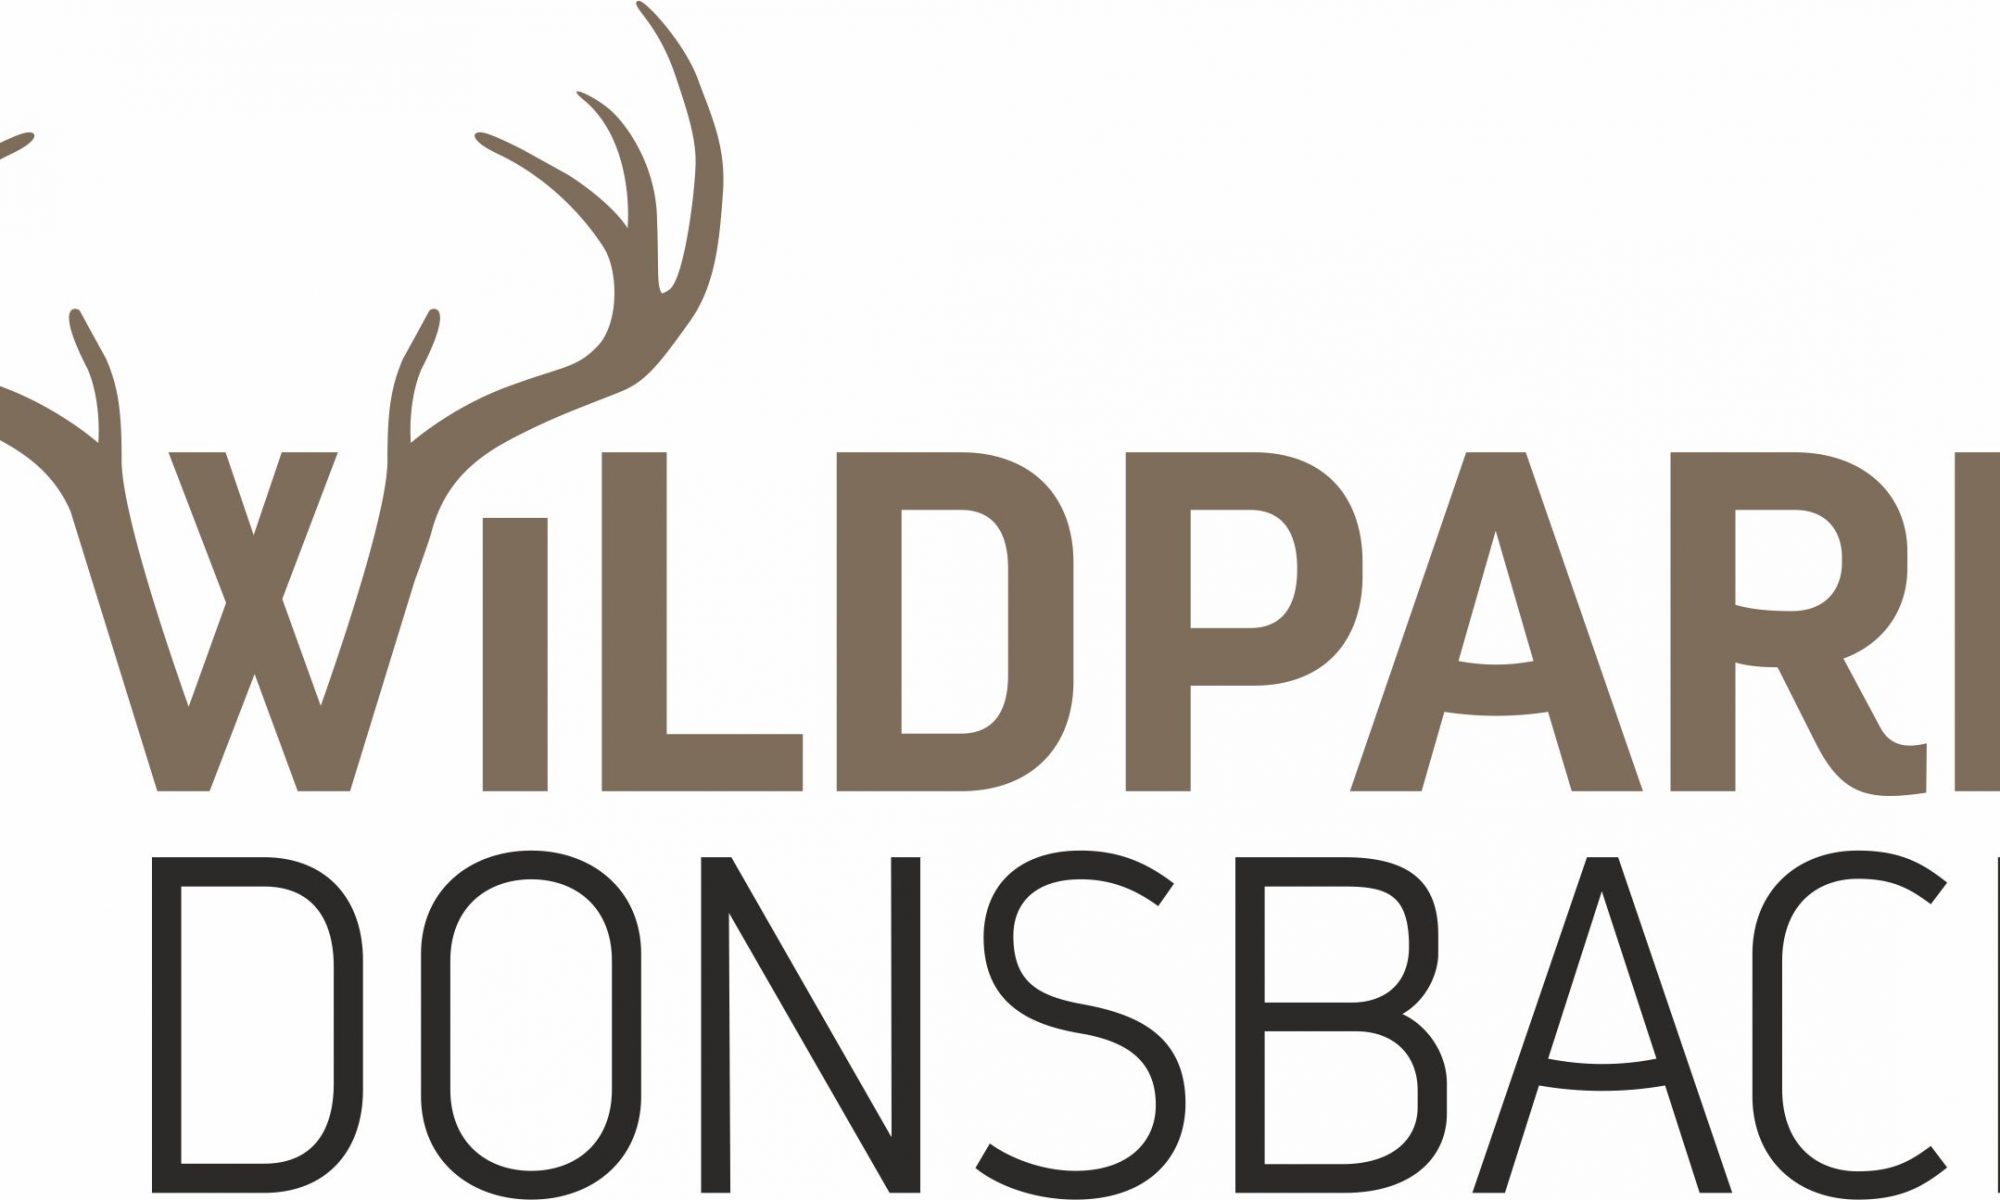 Logo des Wildparks Donsbach